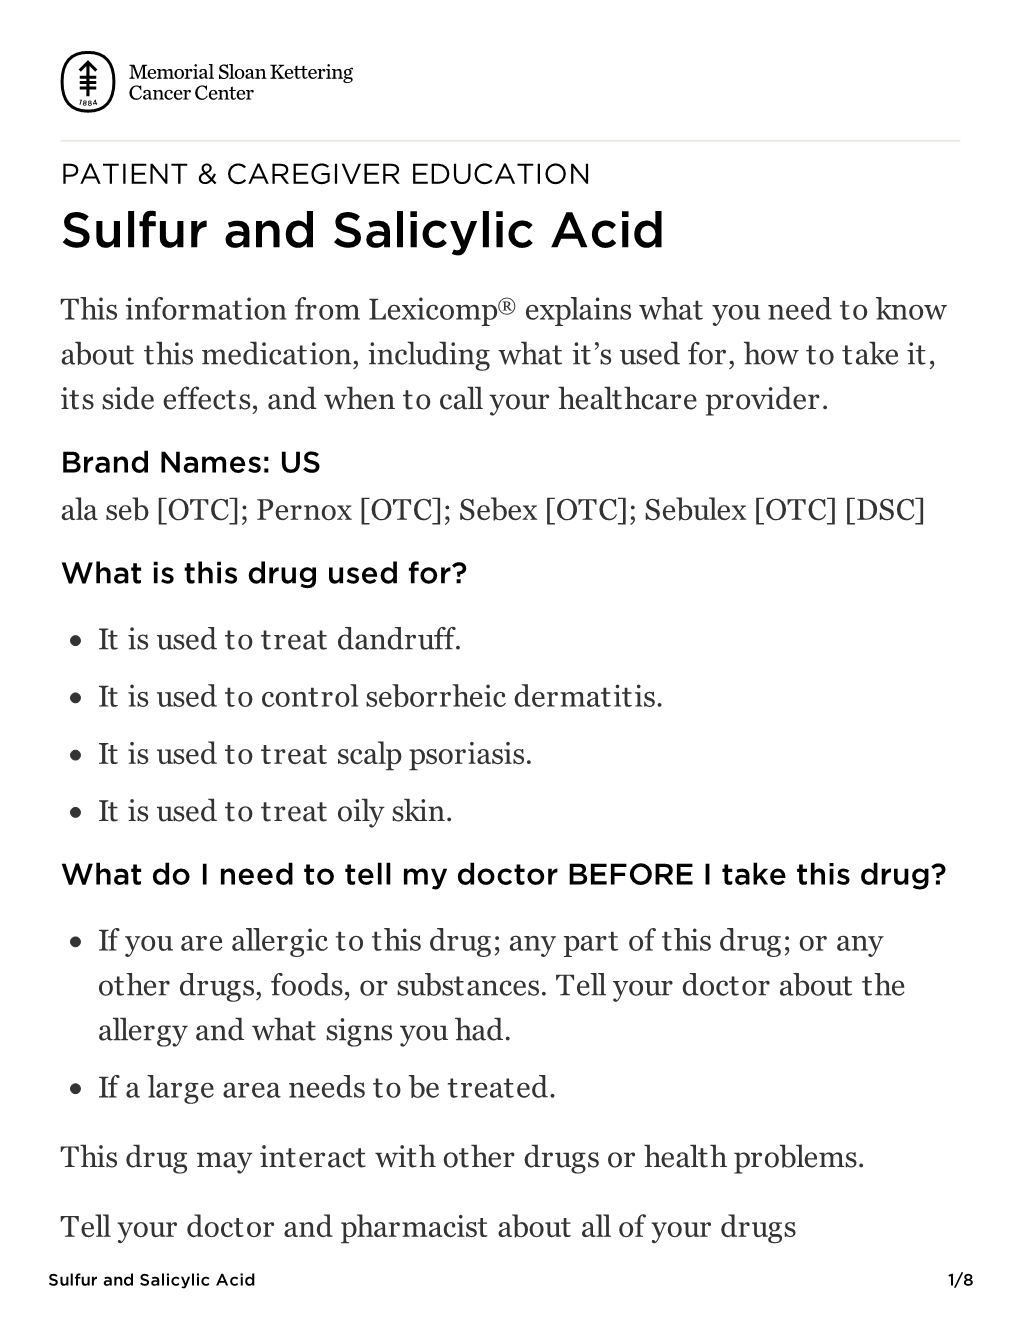 Sulfur and Salicylic Acid